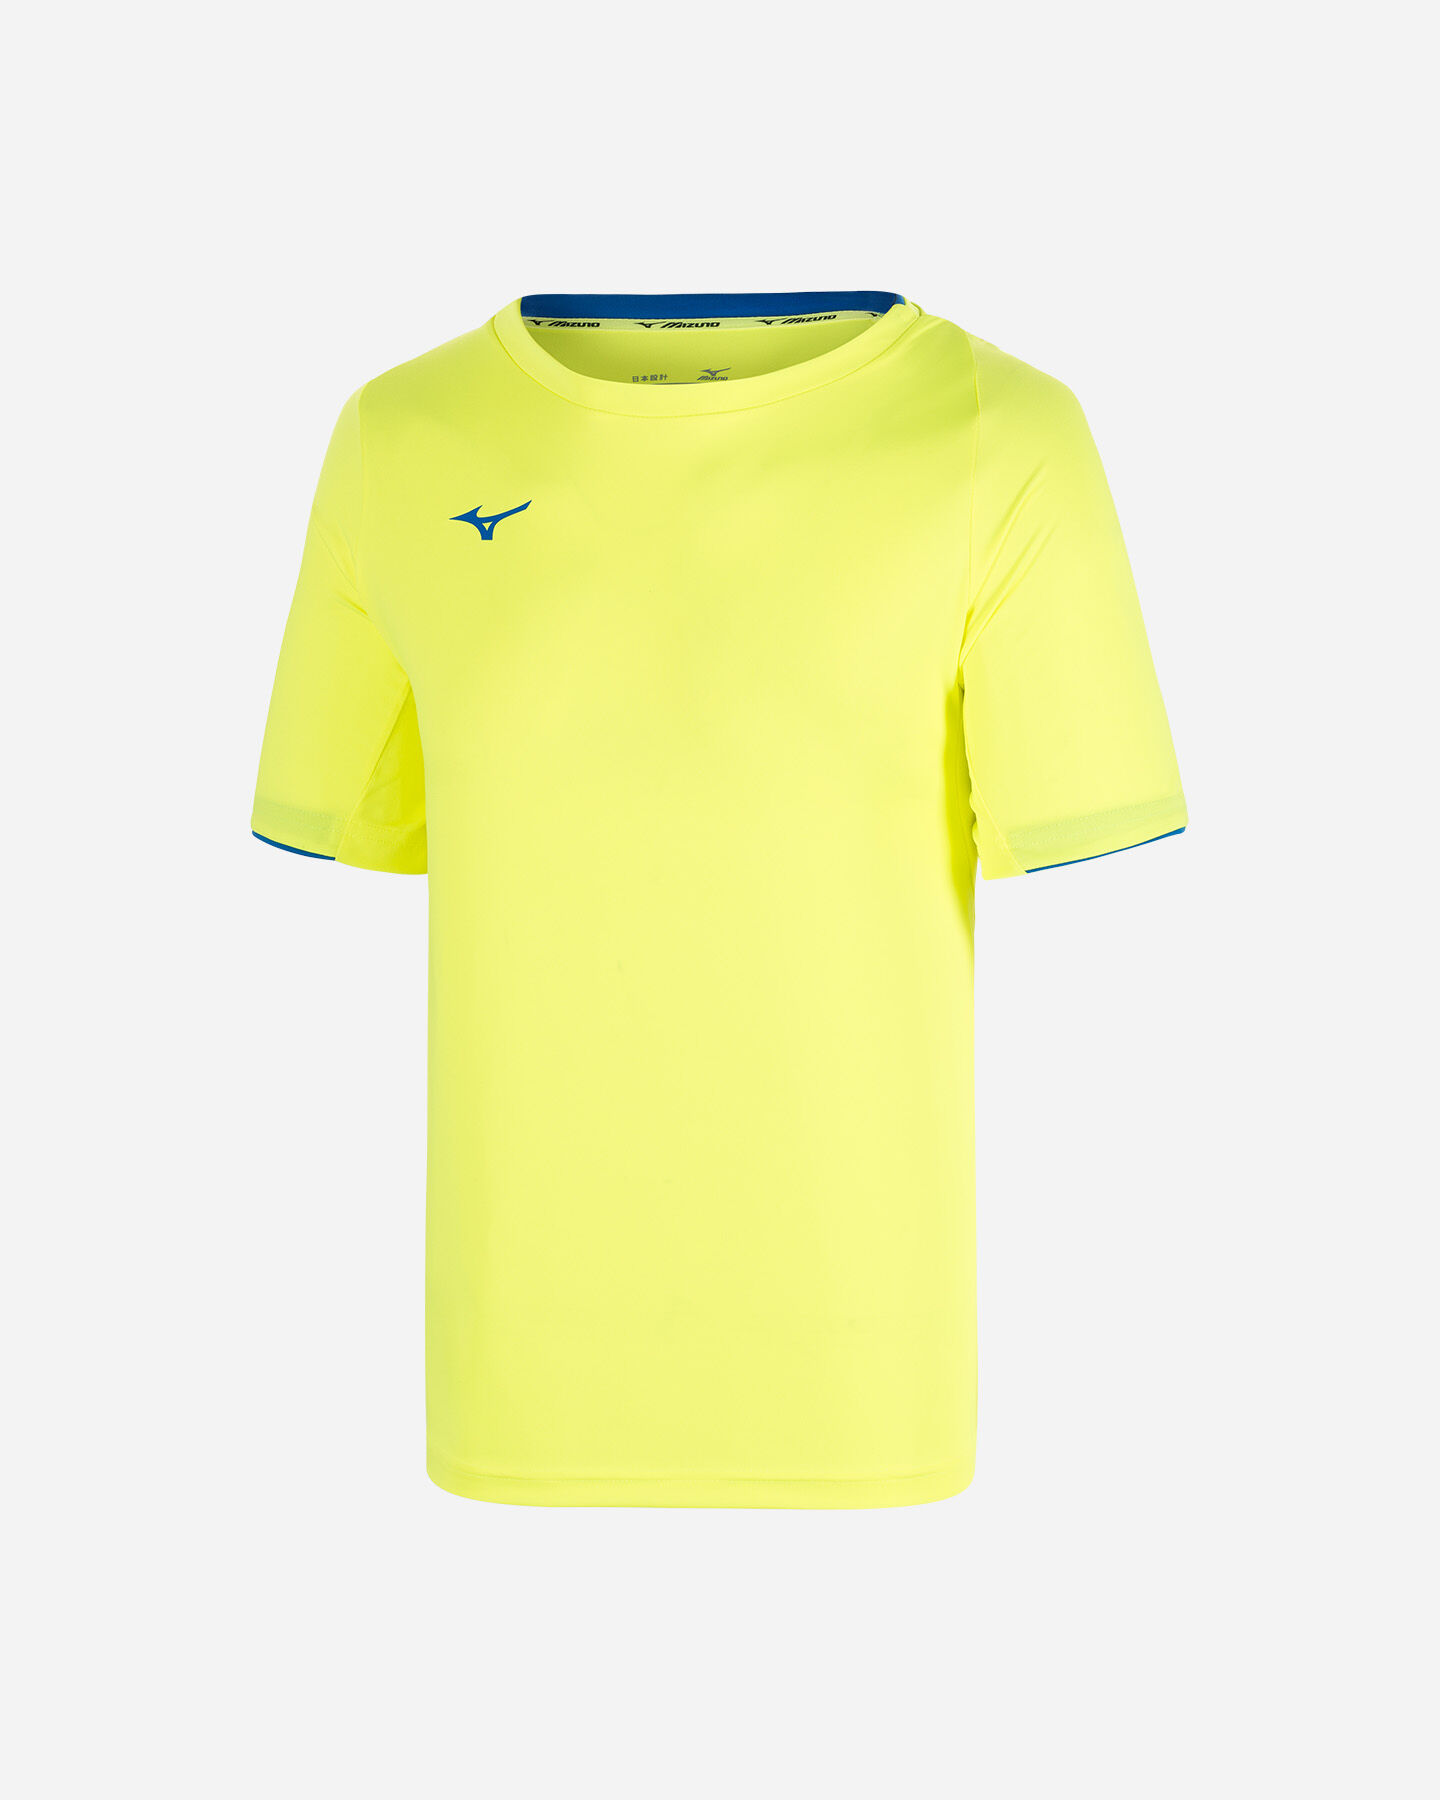  T-Shirt tennis MIZUNO TENNIS CORE M S5363439|44|S scatto 0